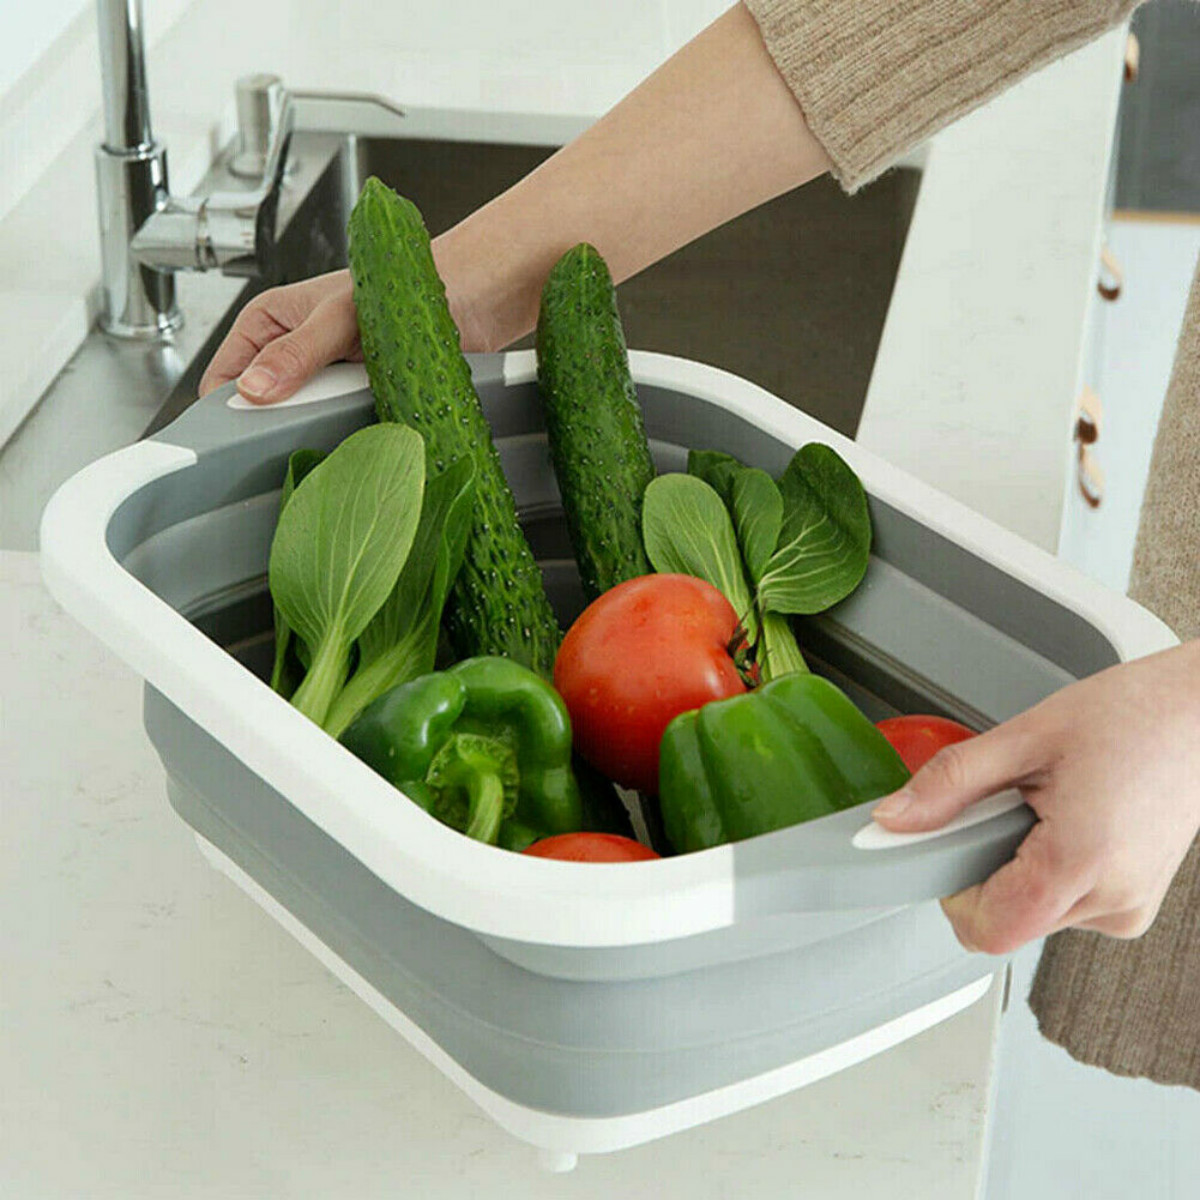 4-in-1-Foldable-Multifunctional-Board-Tool-Fruit-Vegetables-Sink-Drain-Storage-Basket-1523907-5